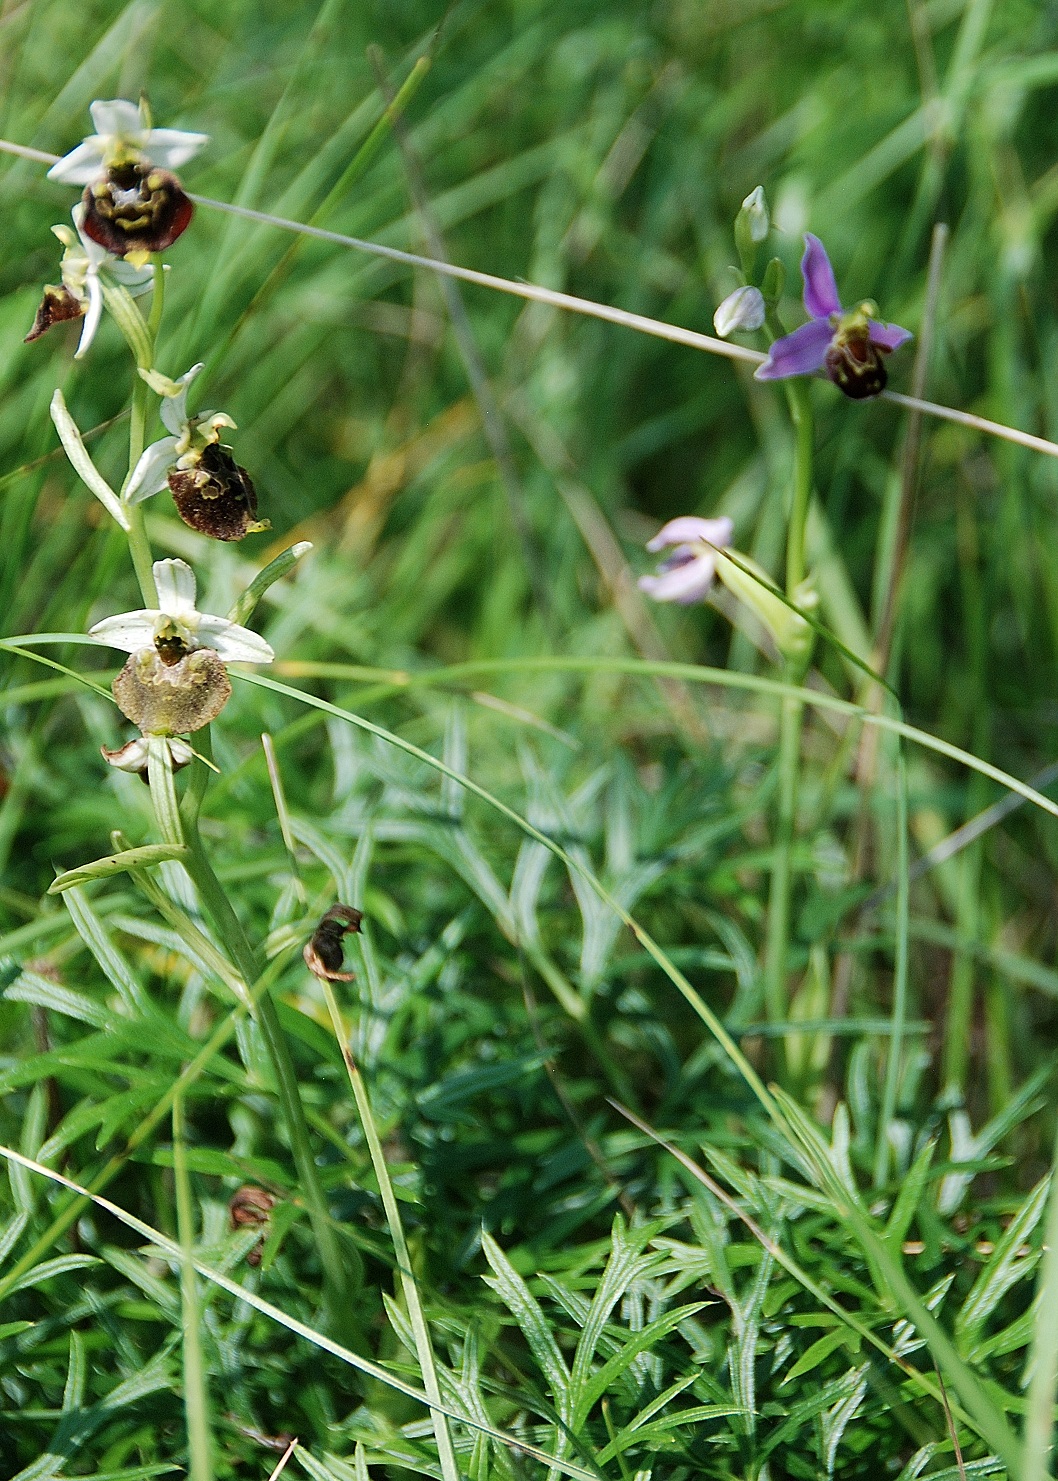 Perchtoldsdorfer _05062016_(29)-Ophrys holoserica - Hummel-Ragwurz und Ophrys apifera - Bienen-Ragwurz.JPG